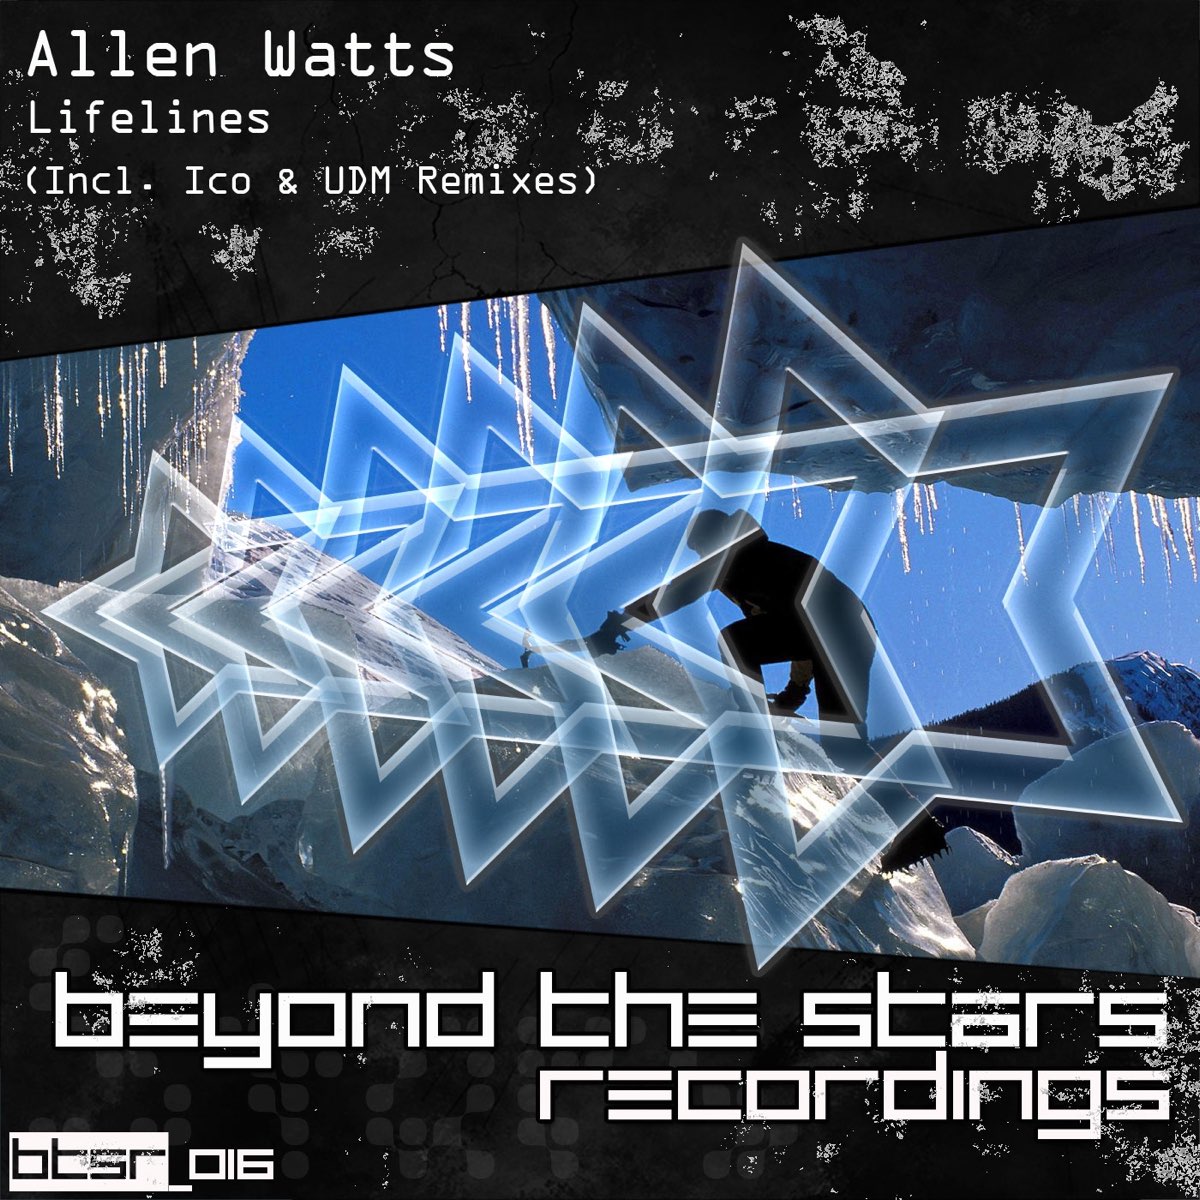 Lifelines (ICO Remix) Allen Watts. Allen Watts Uplifting Trance. Фото альбома Lifelines. Allen Watts выступления на шоу.